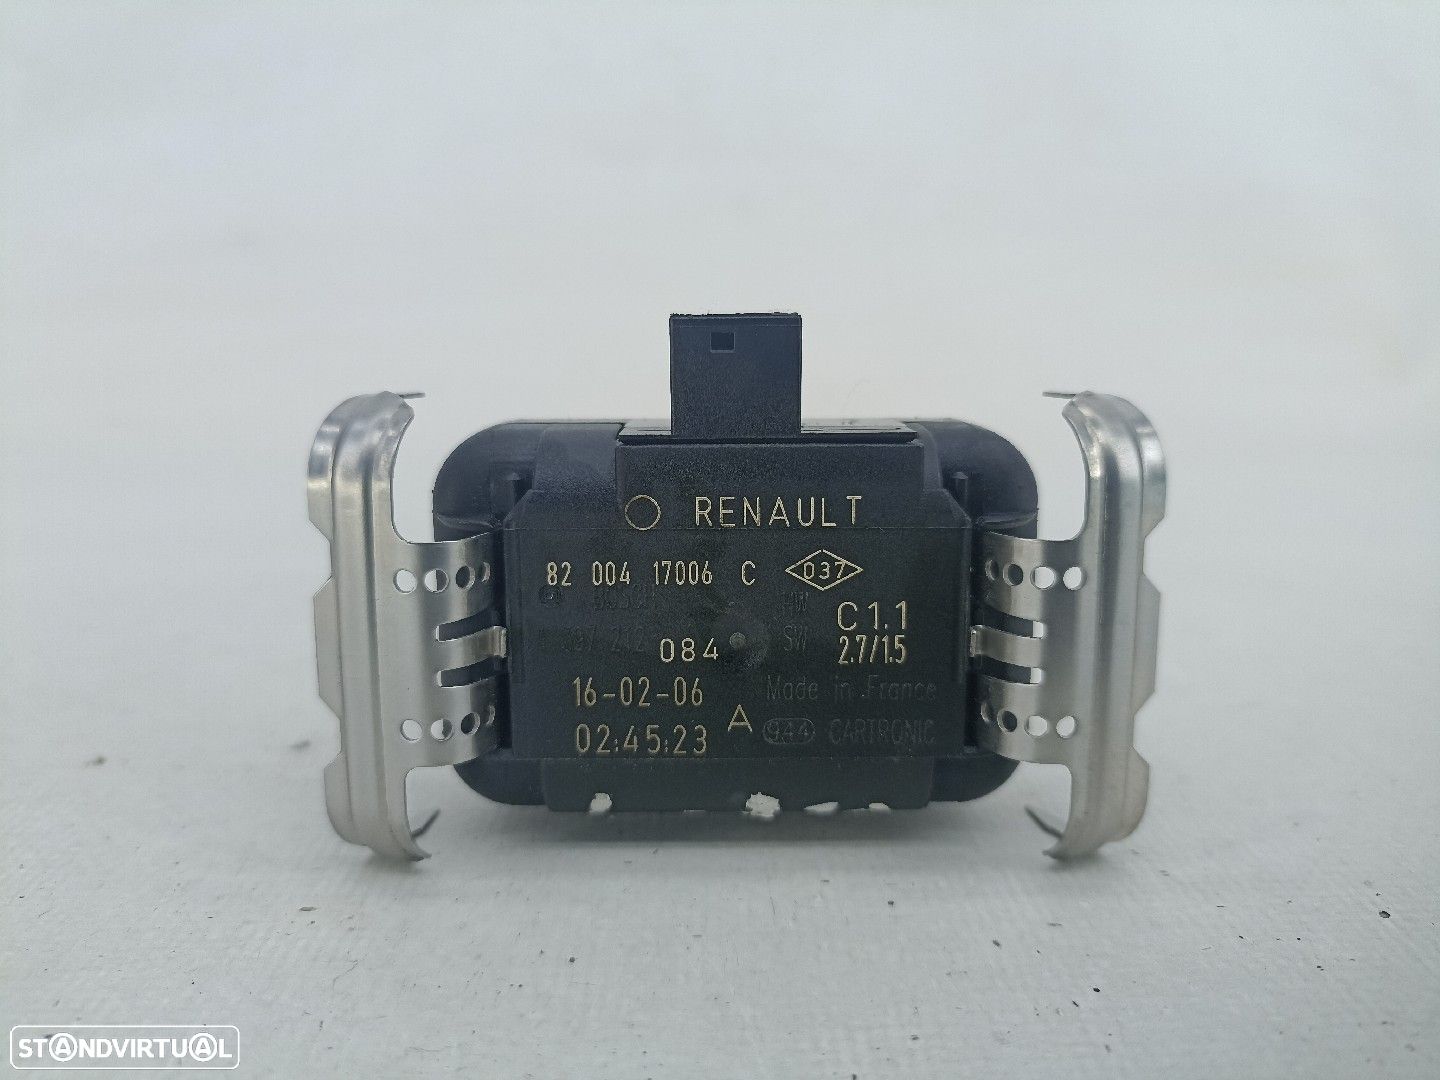 Sensor Renault Espace Iv (Jk0/1_) - 1